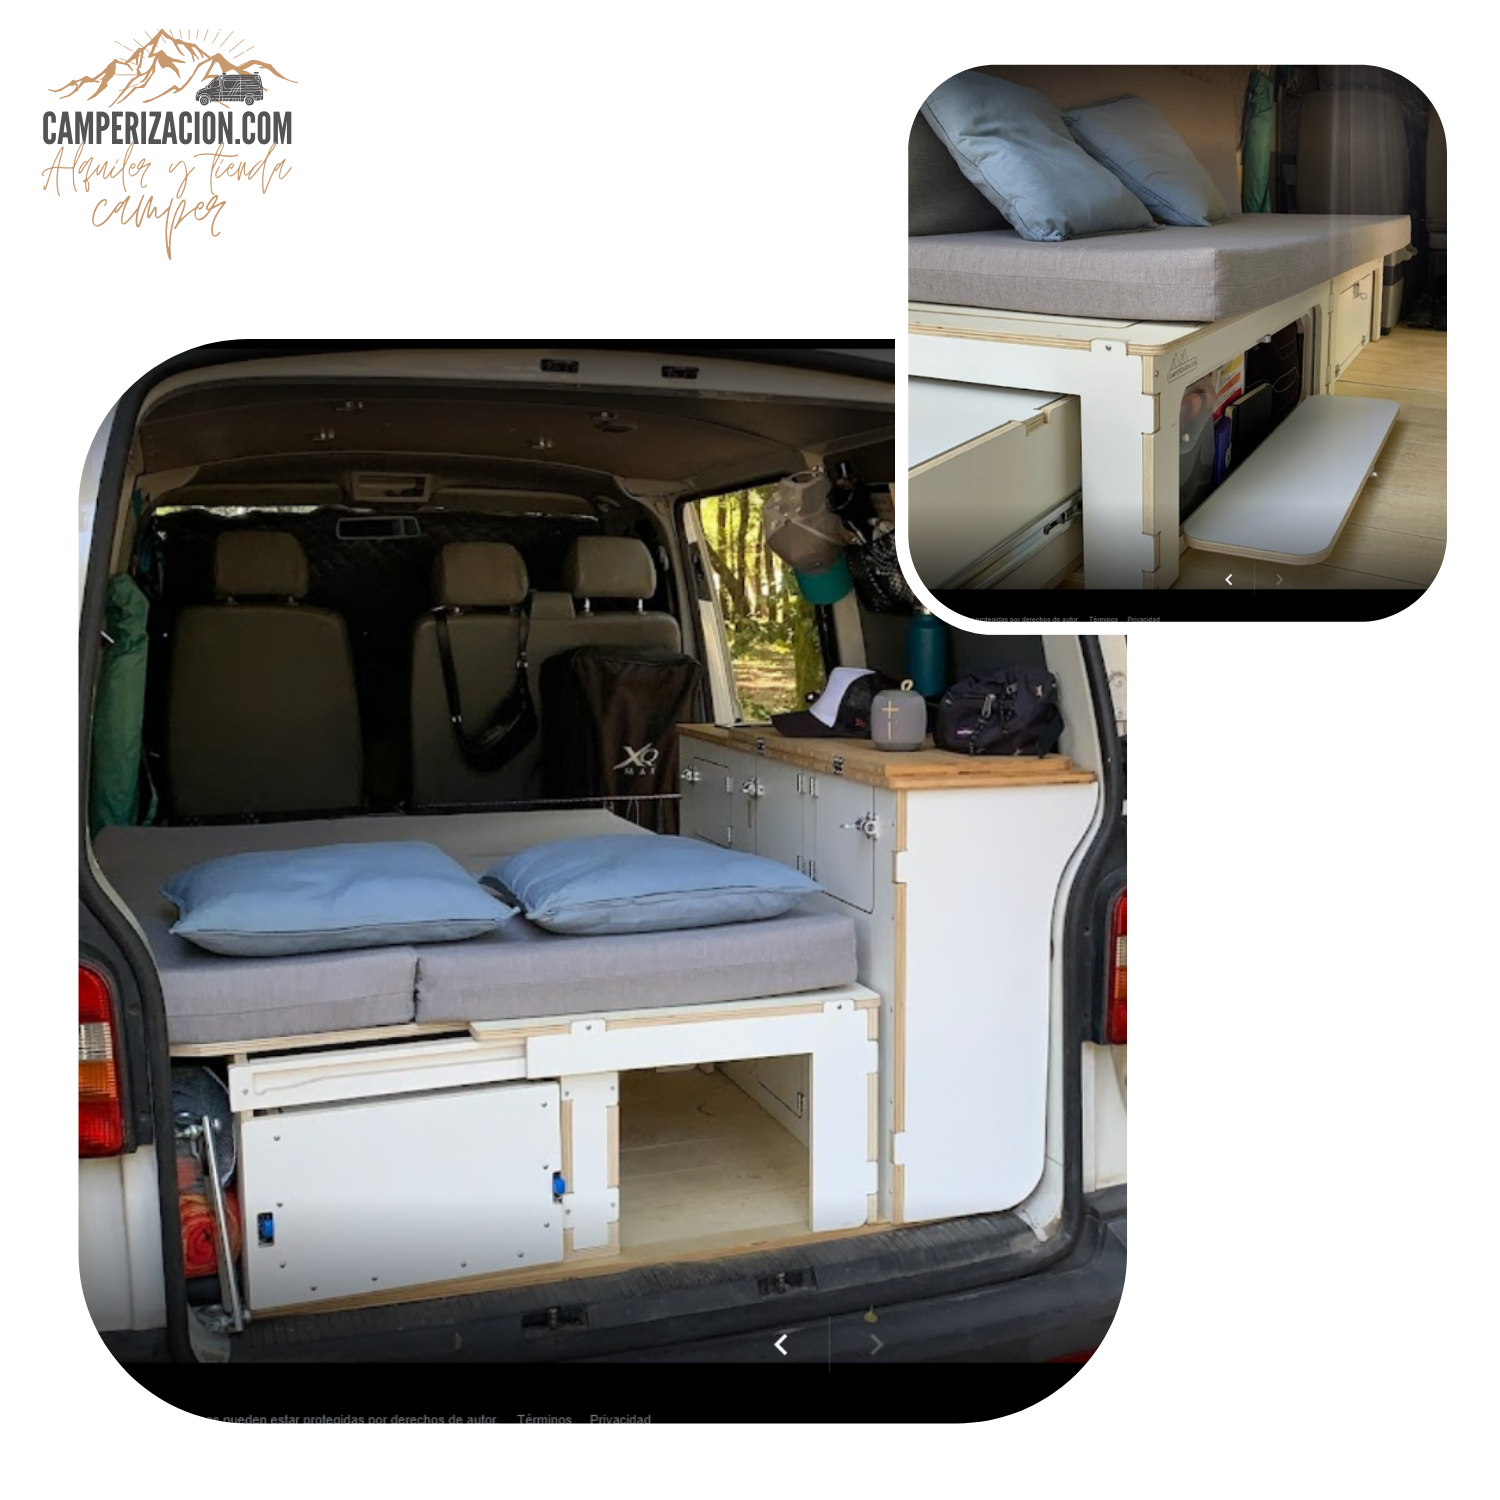 Alquilar furgonetas con kits camper desmontables – Furgo Camper Muebles